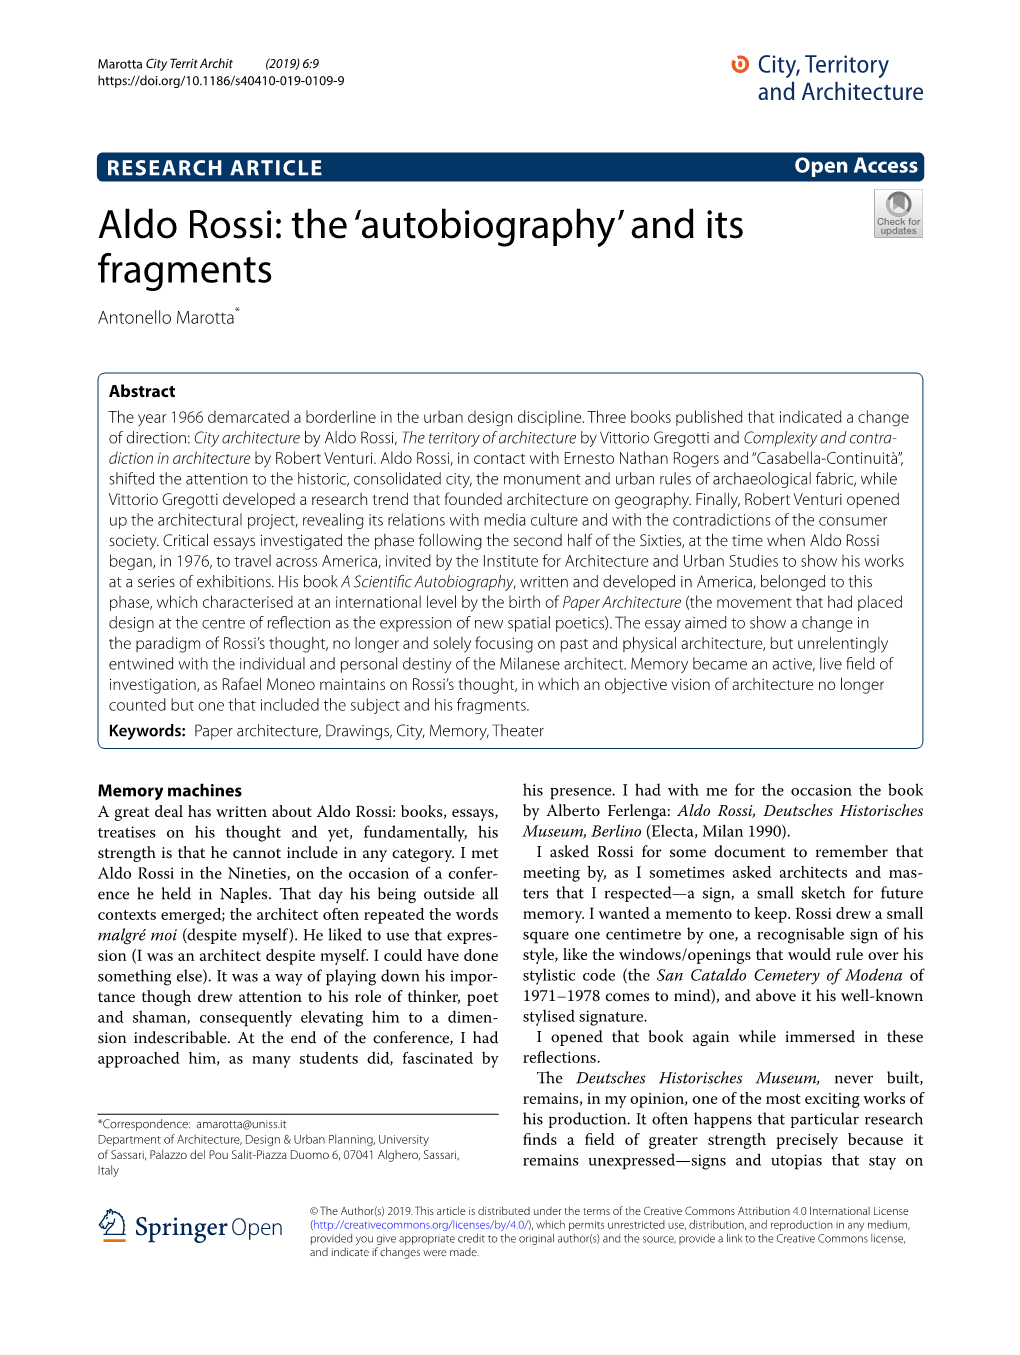 Aldo Rossi: the ‘Autobiography’ and Its Fragments Antonello Marotta*